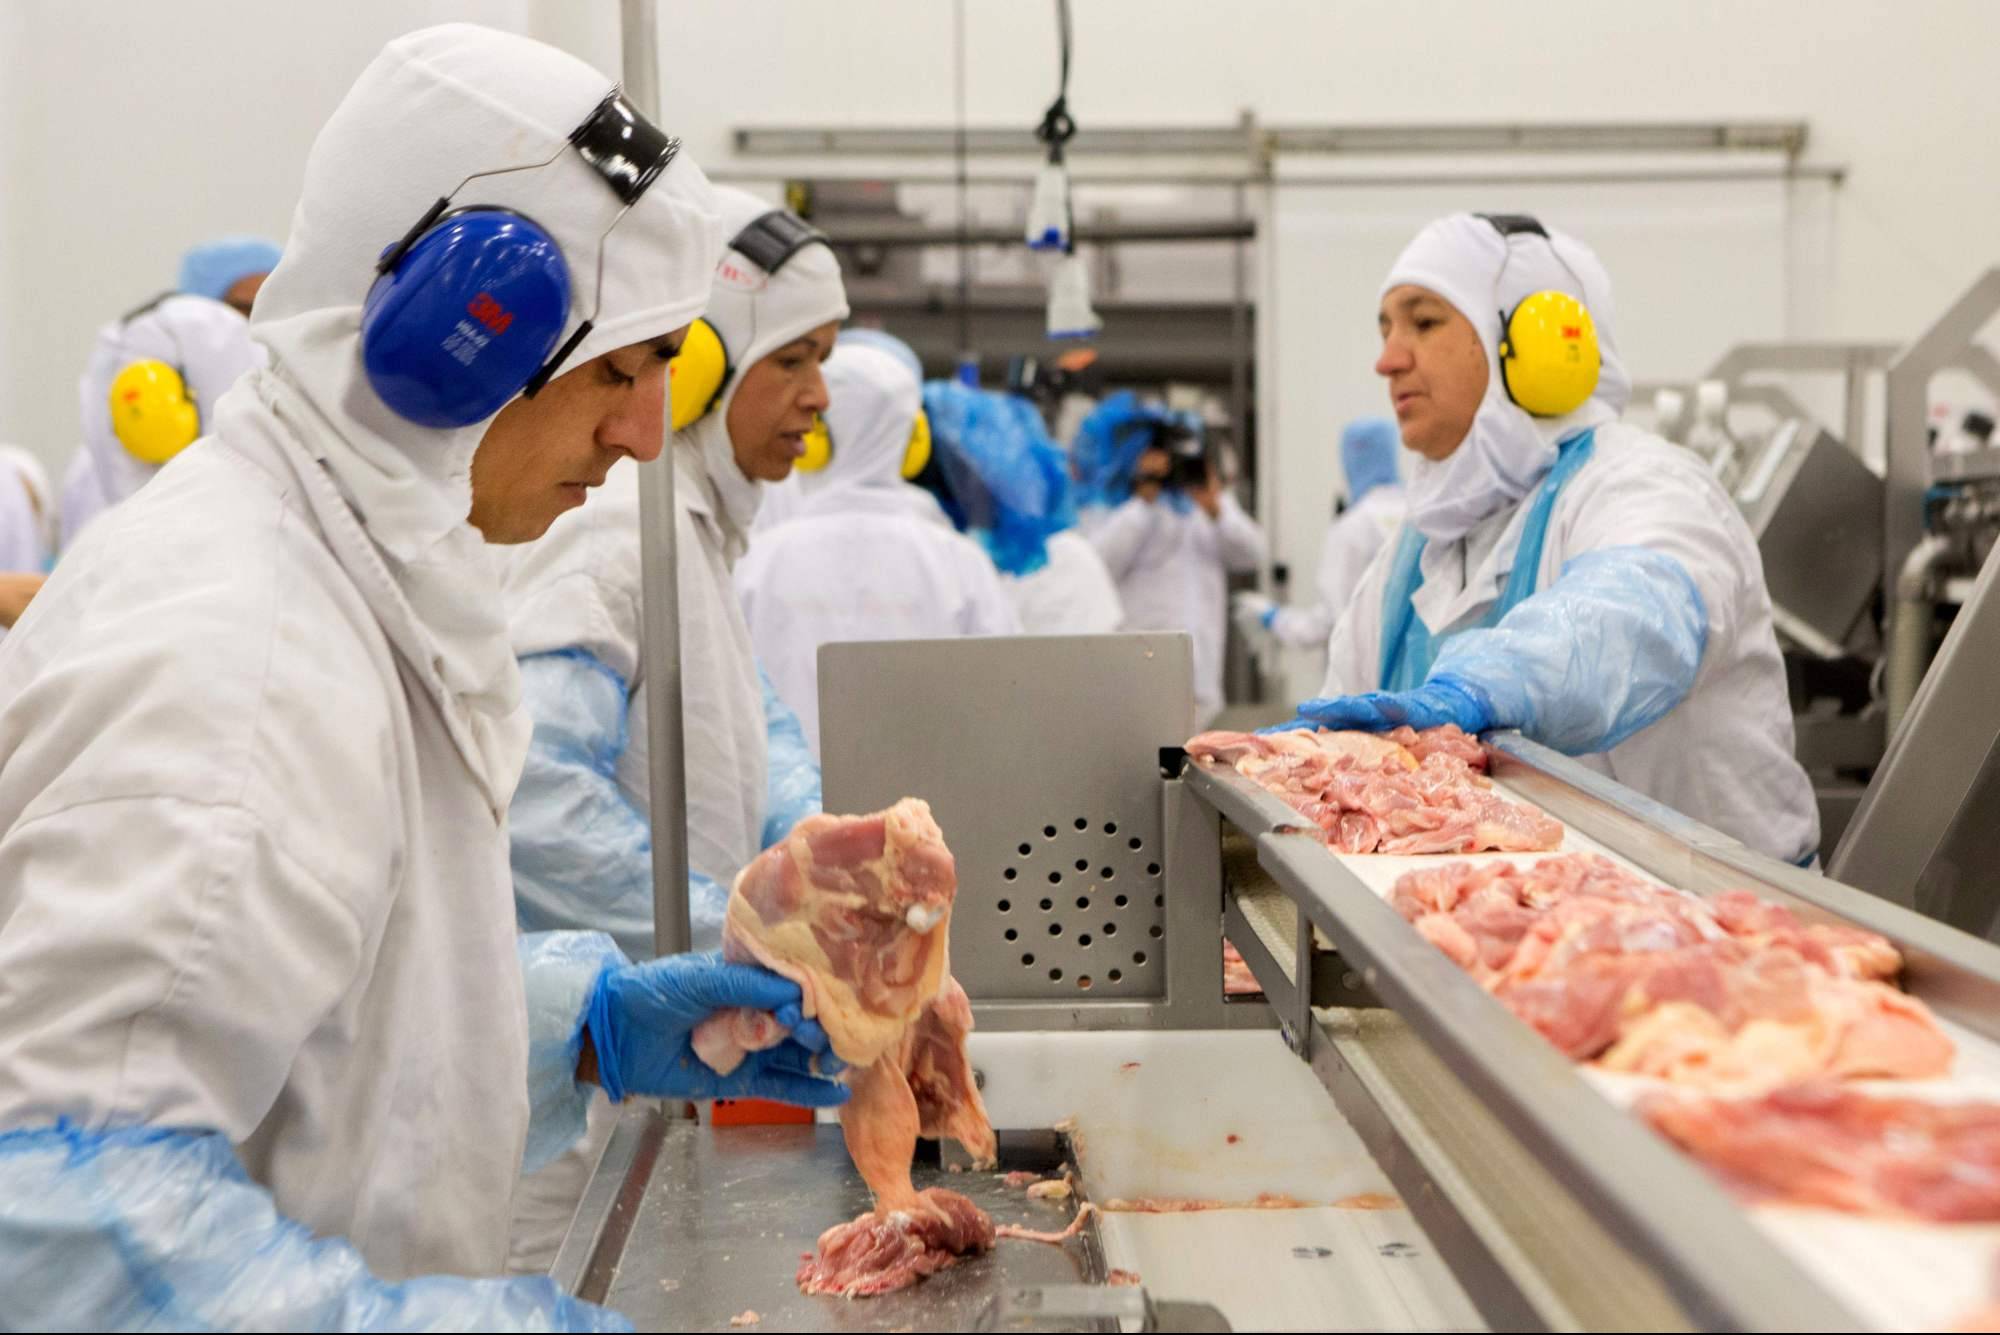 Daftar Negara Amerika Latin Penghasil Daging Sapi Terbesar